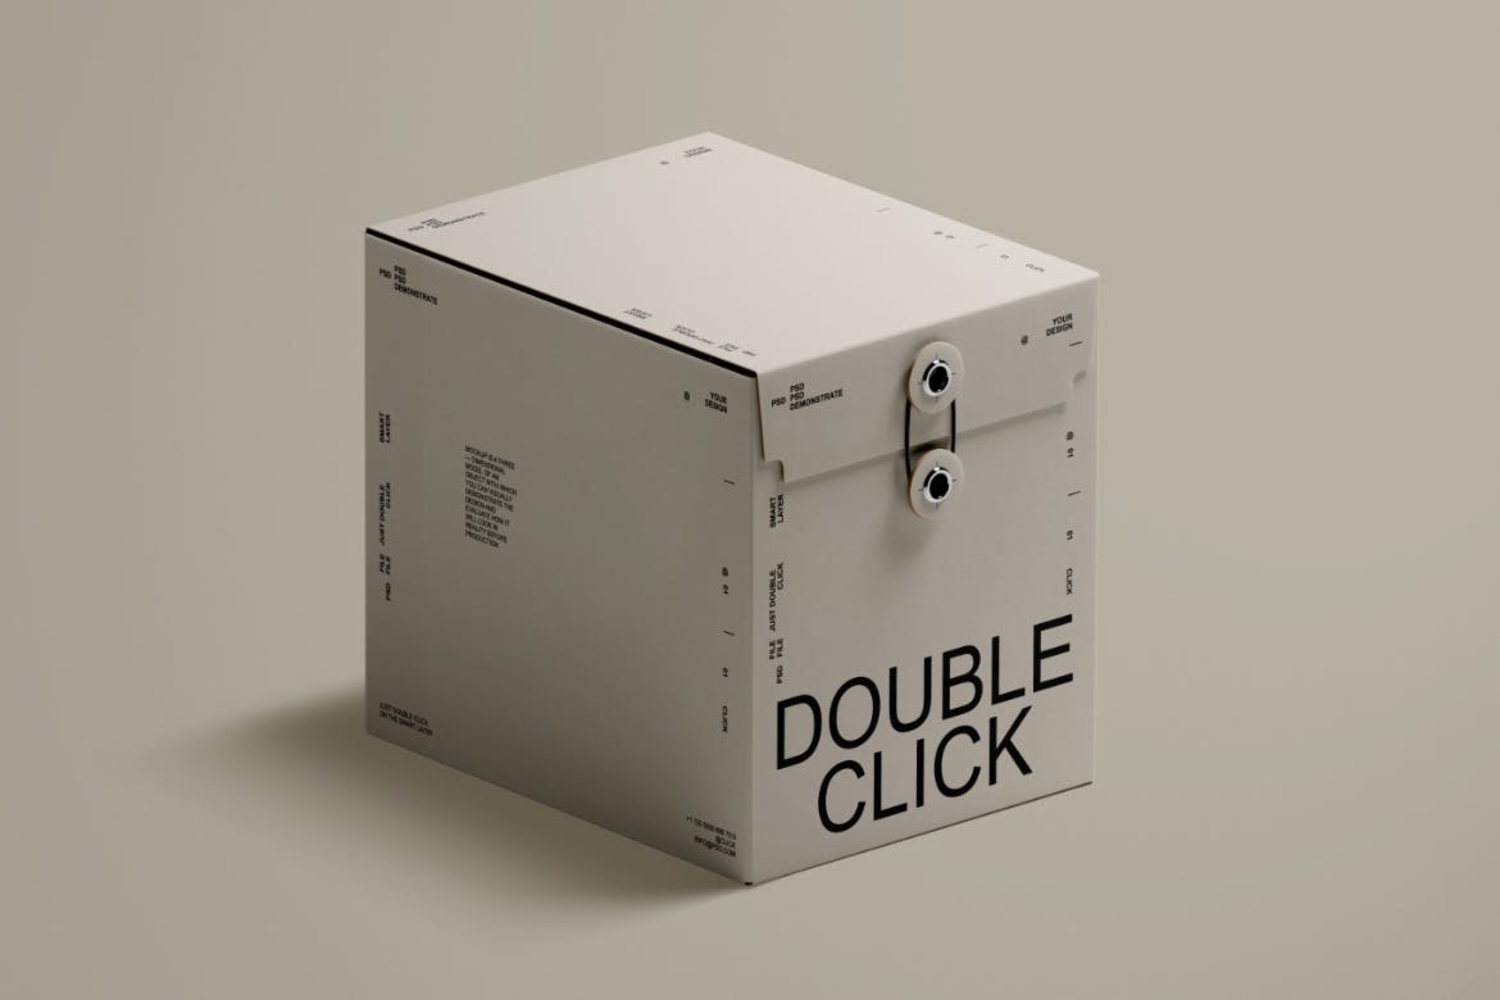 4802 5款正方形质感礼品盒纸盒包装盒设计展示PSD样机Paper Box Mockup Set@GOOODME.COM